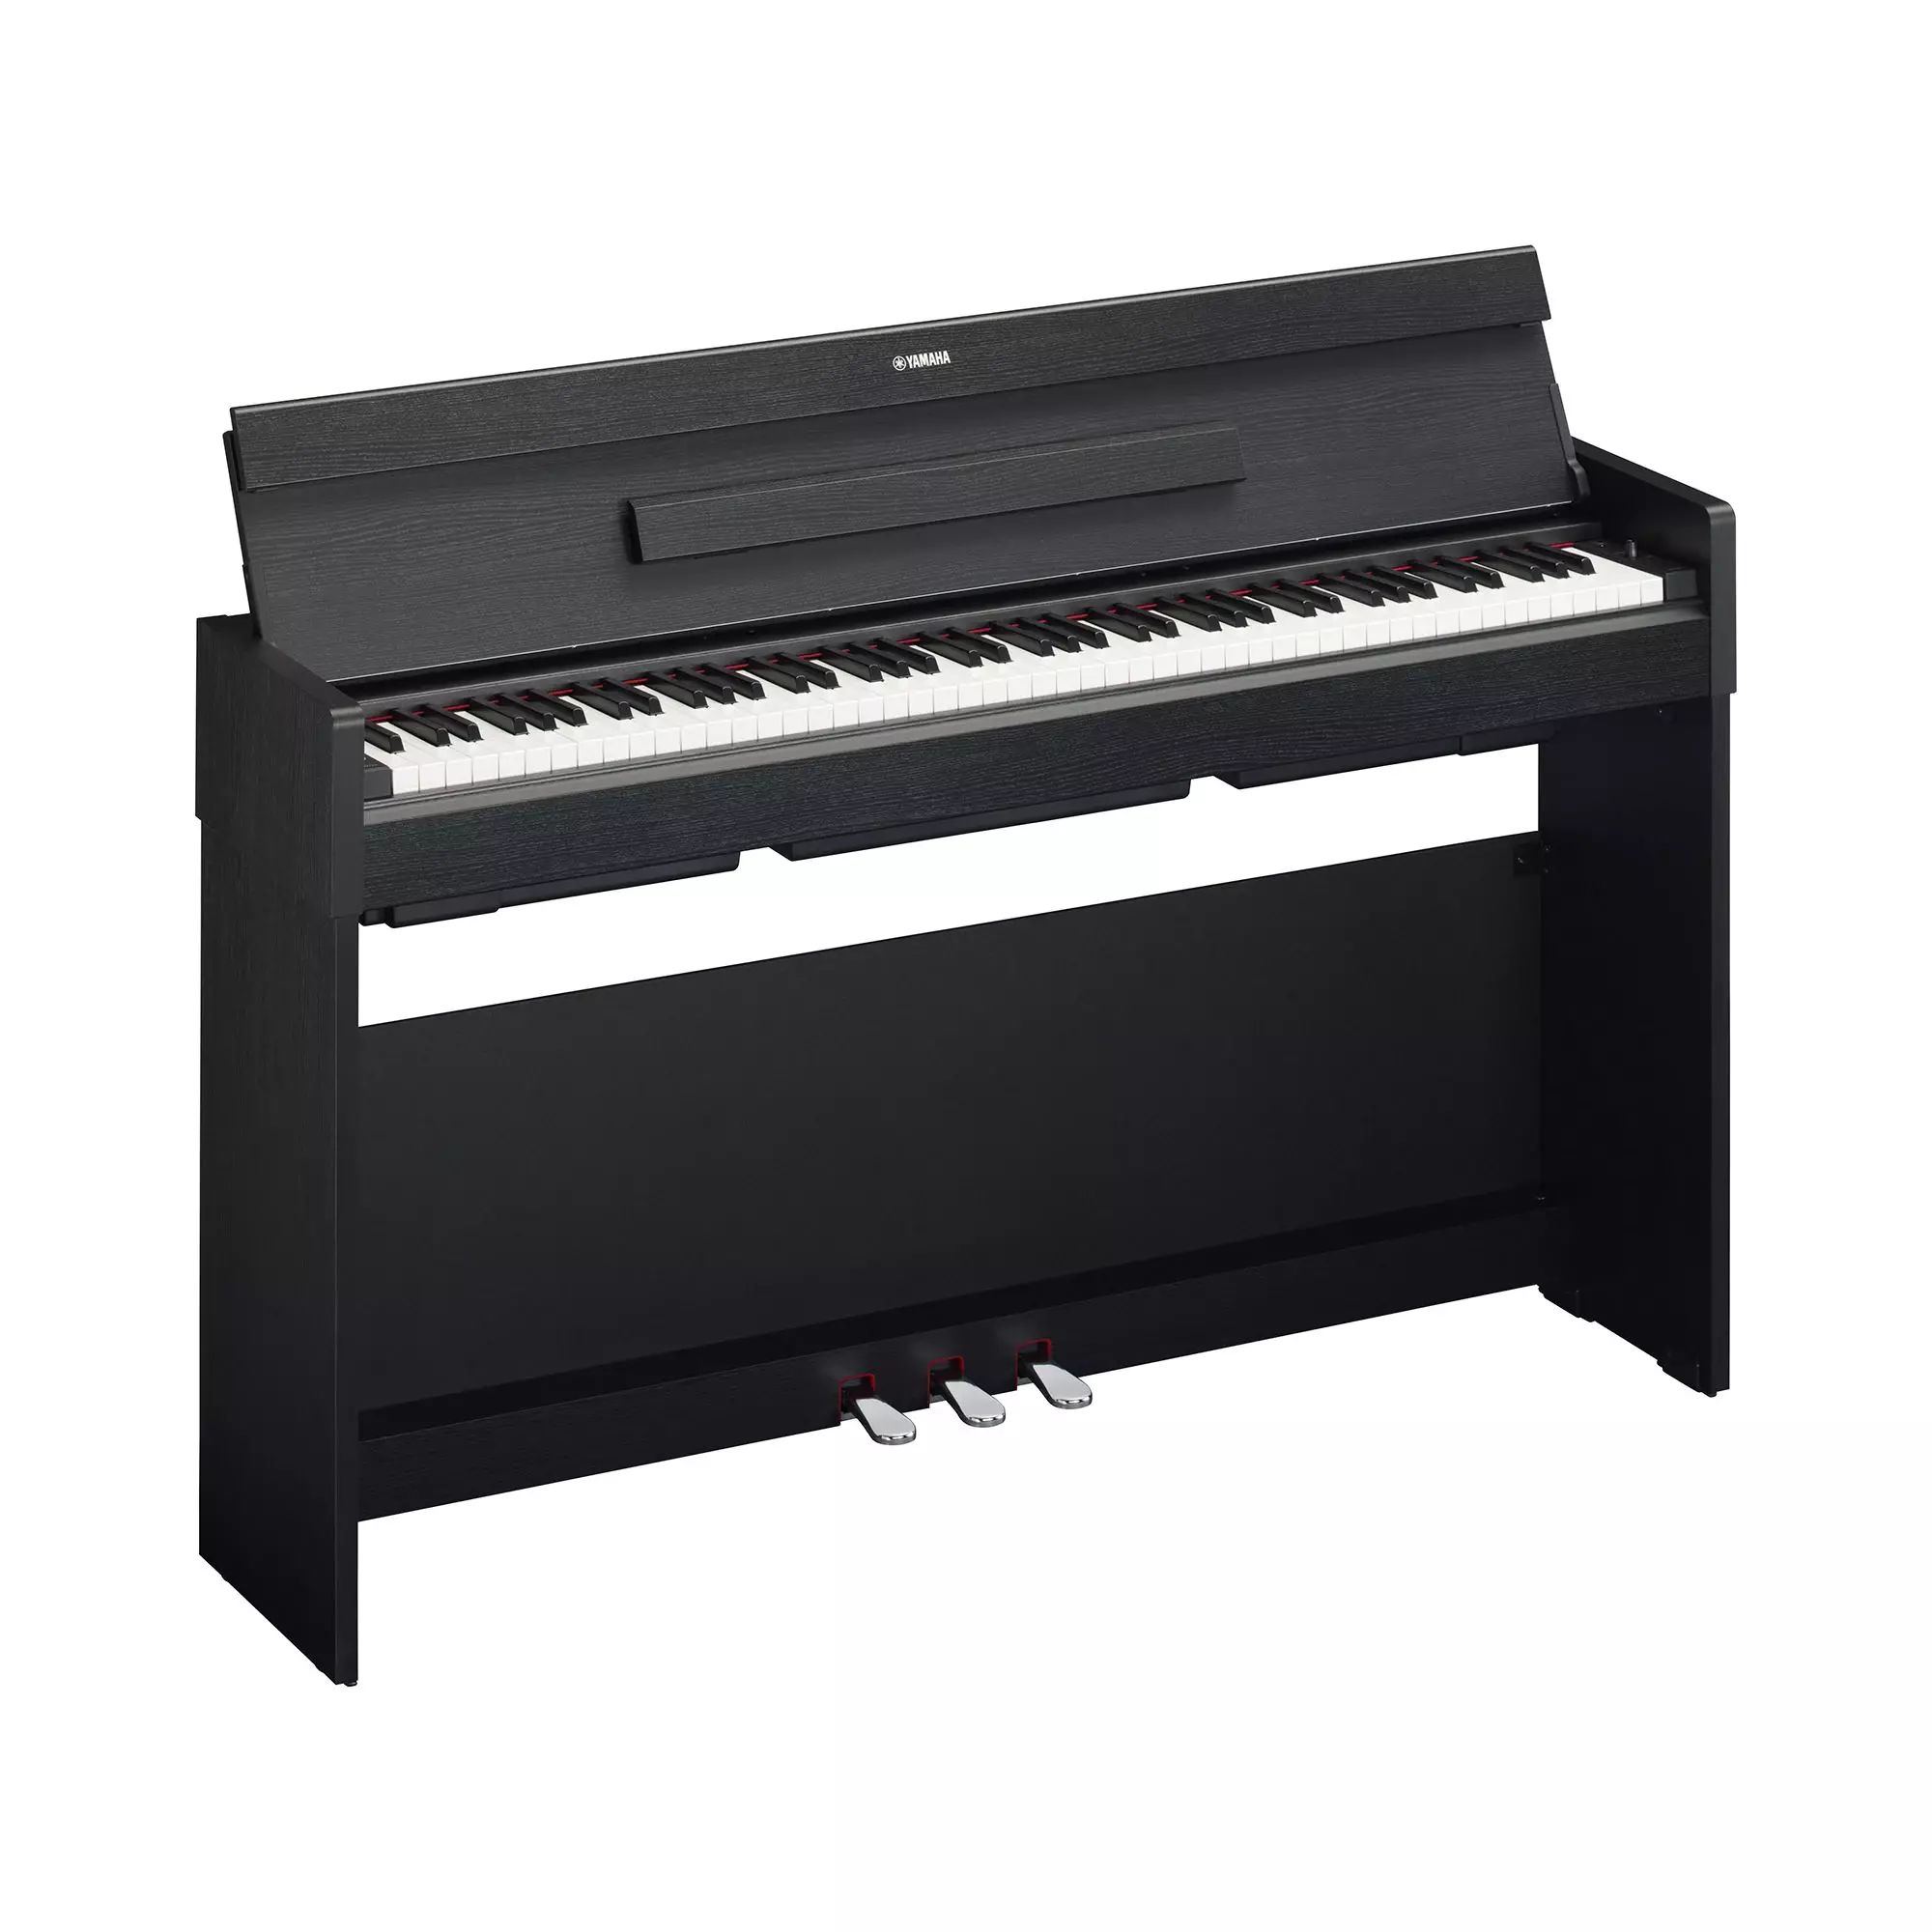 Цифровое пианино Yamaha YDP-S35B